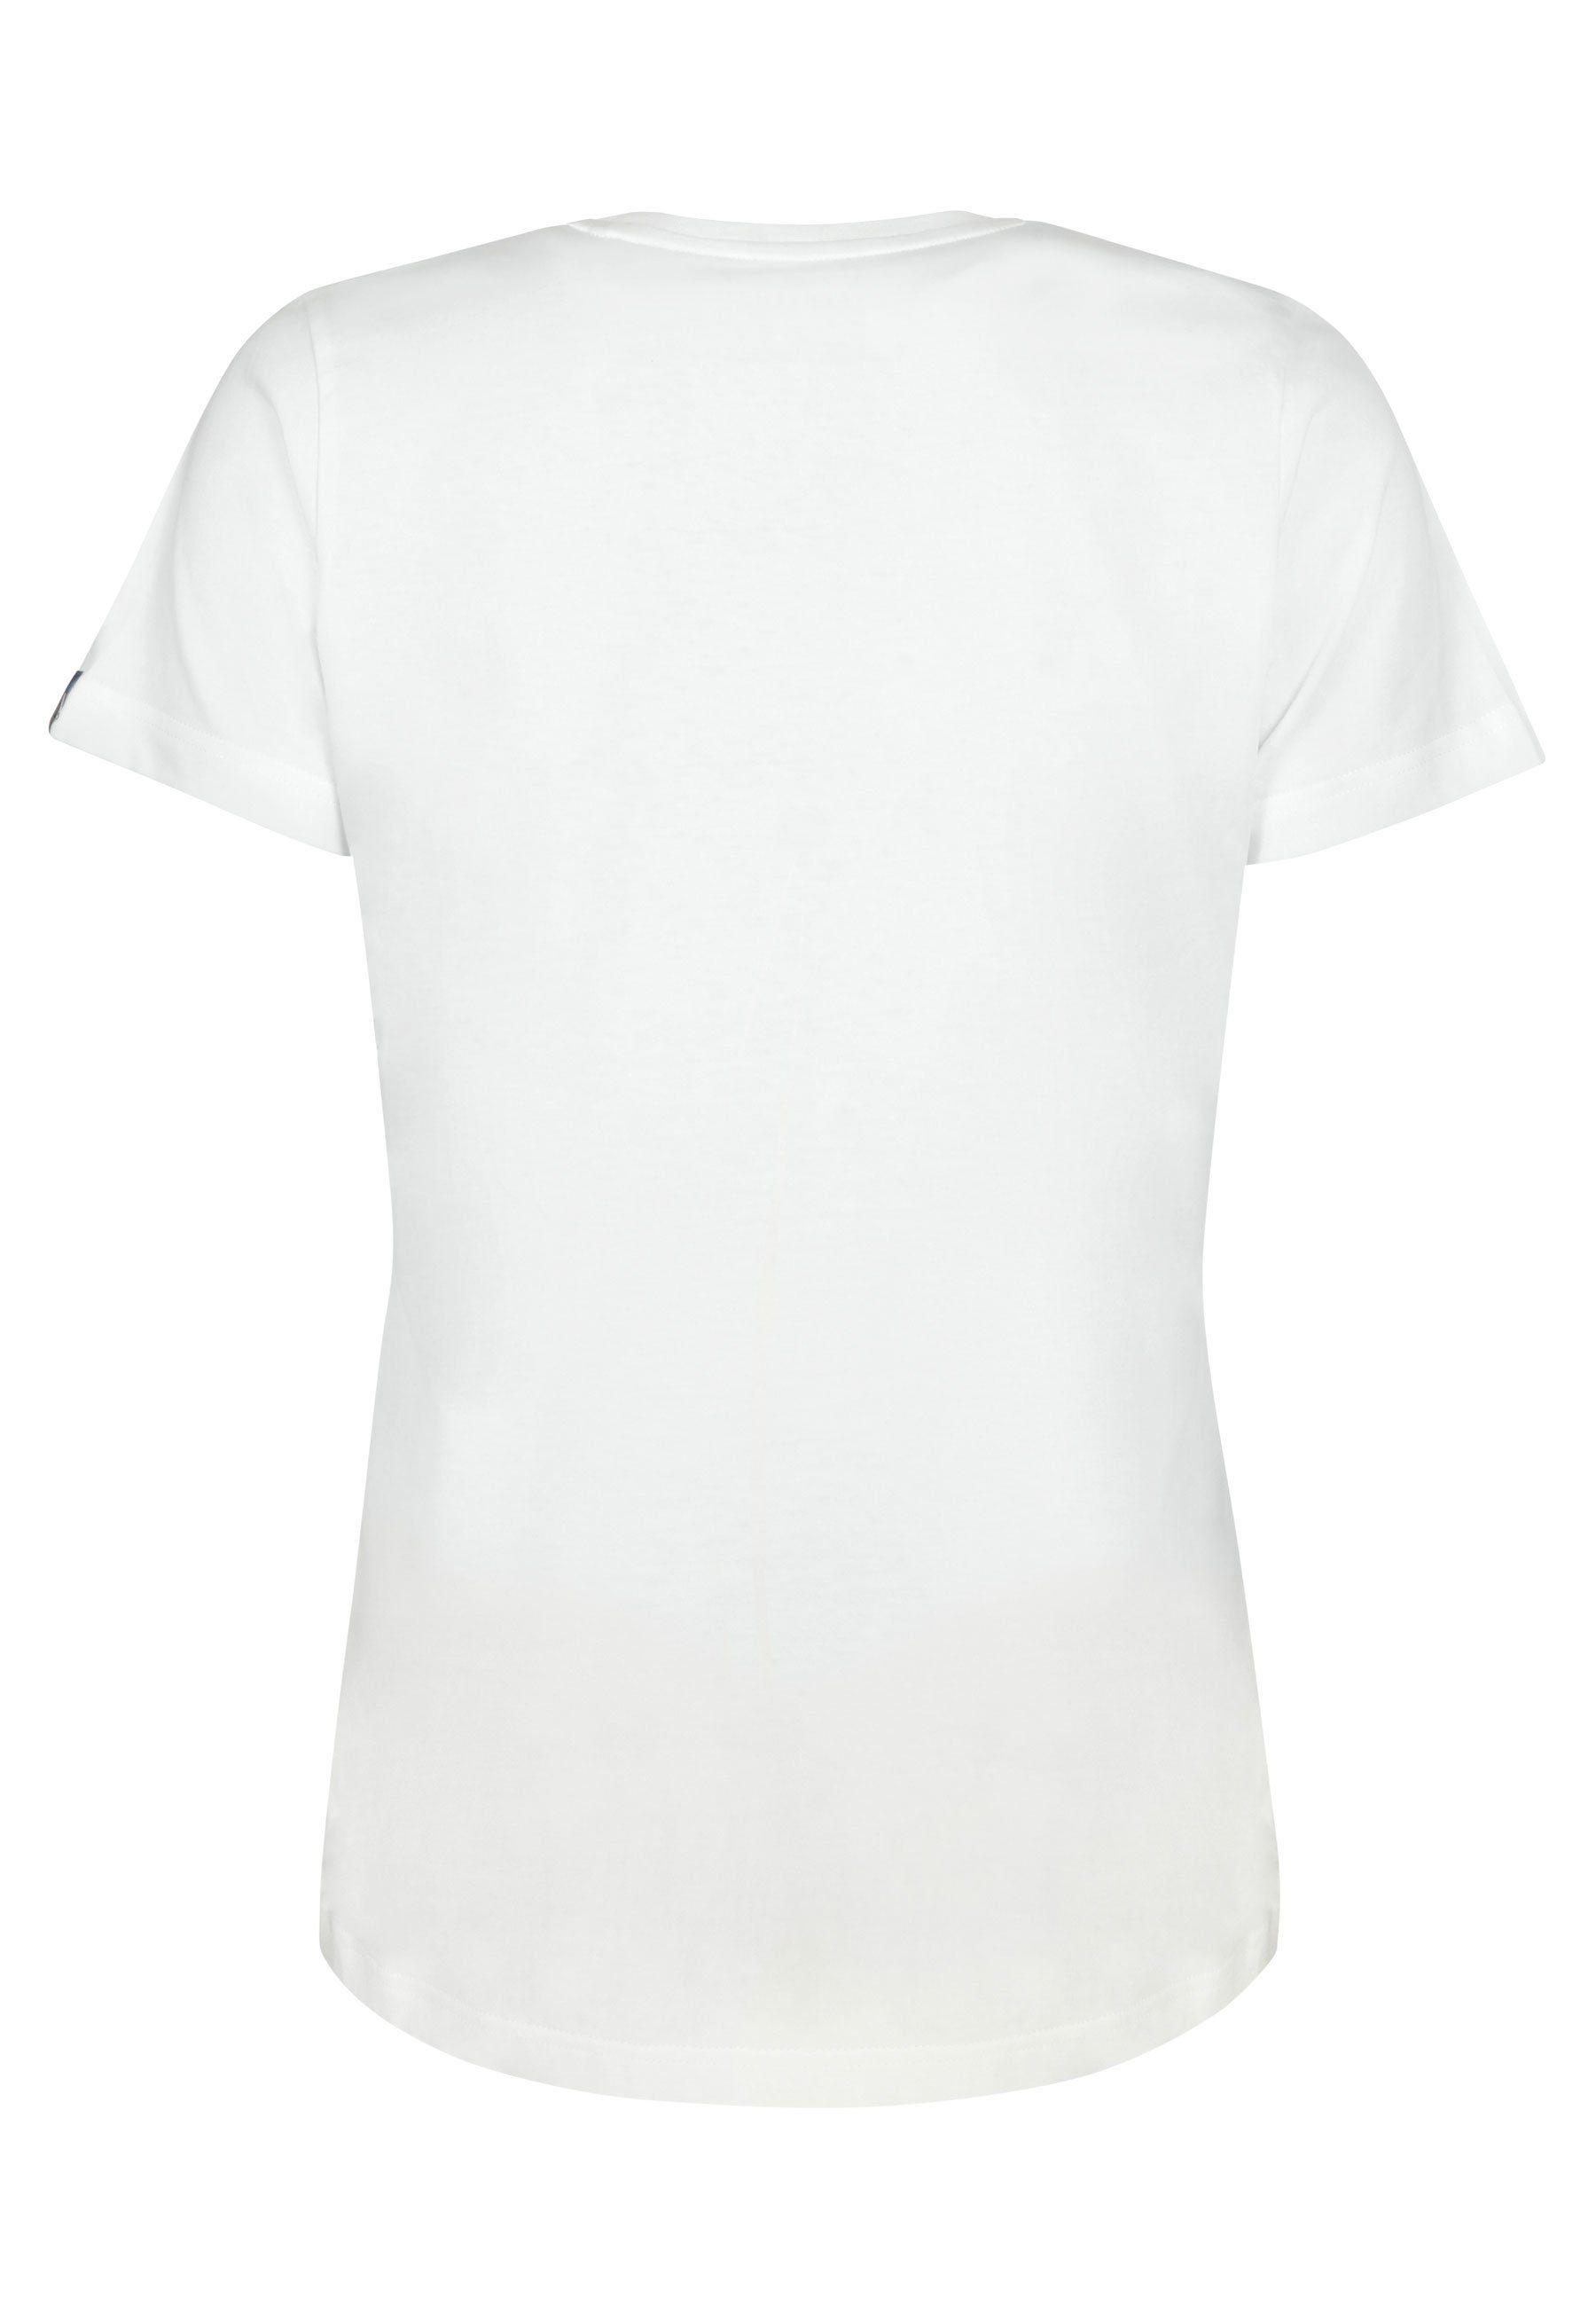 Elkline T-Shirt Sausewind Bike Jersey Shirt Fahrrad Aufdruck White